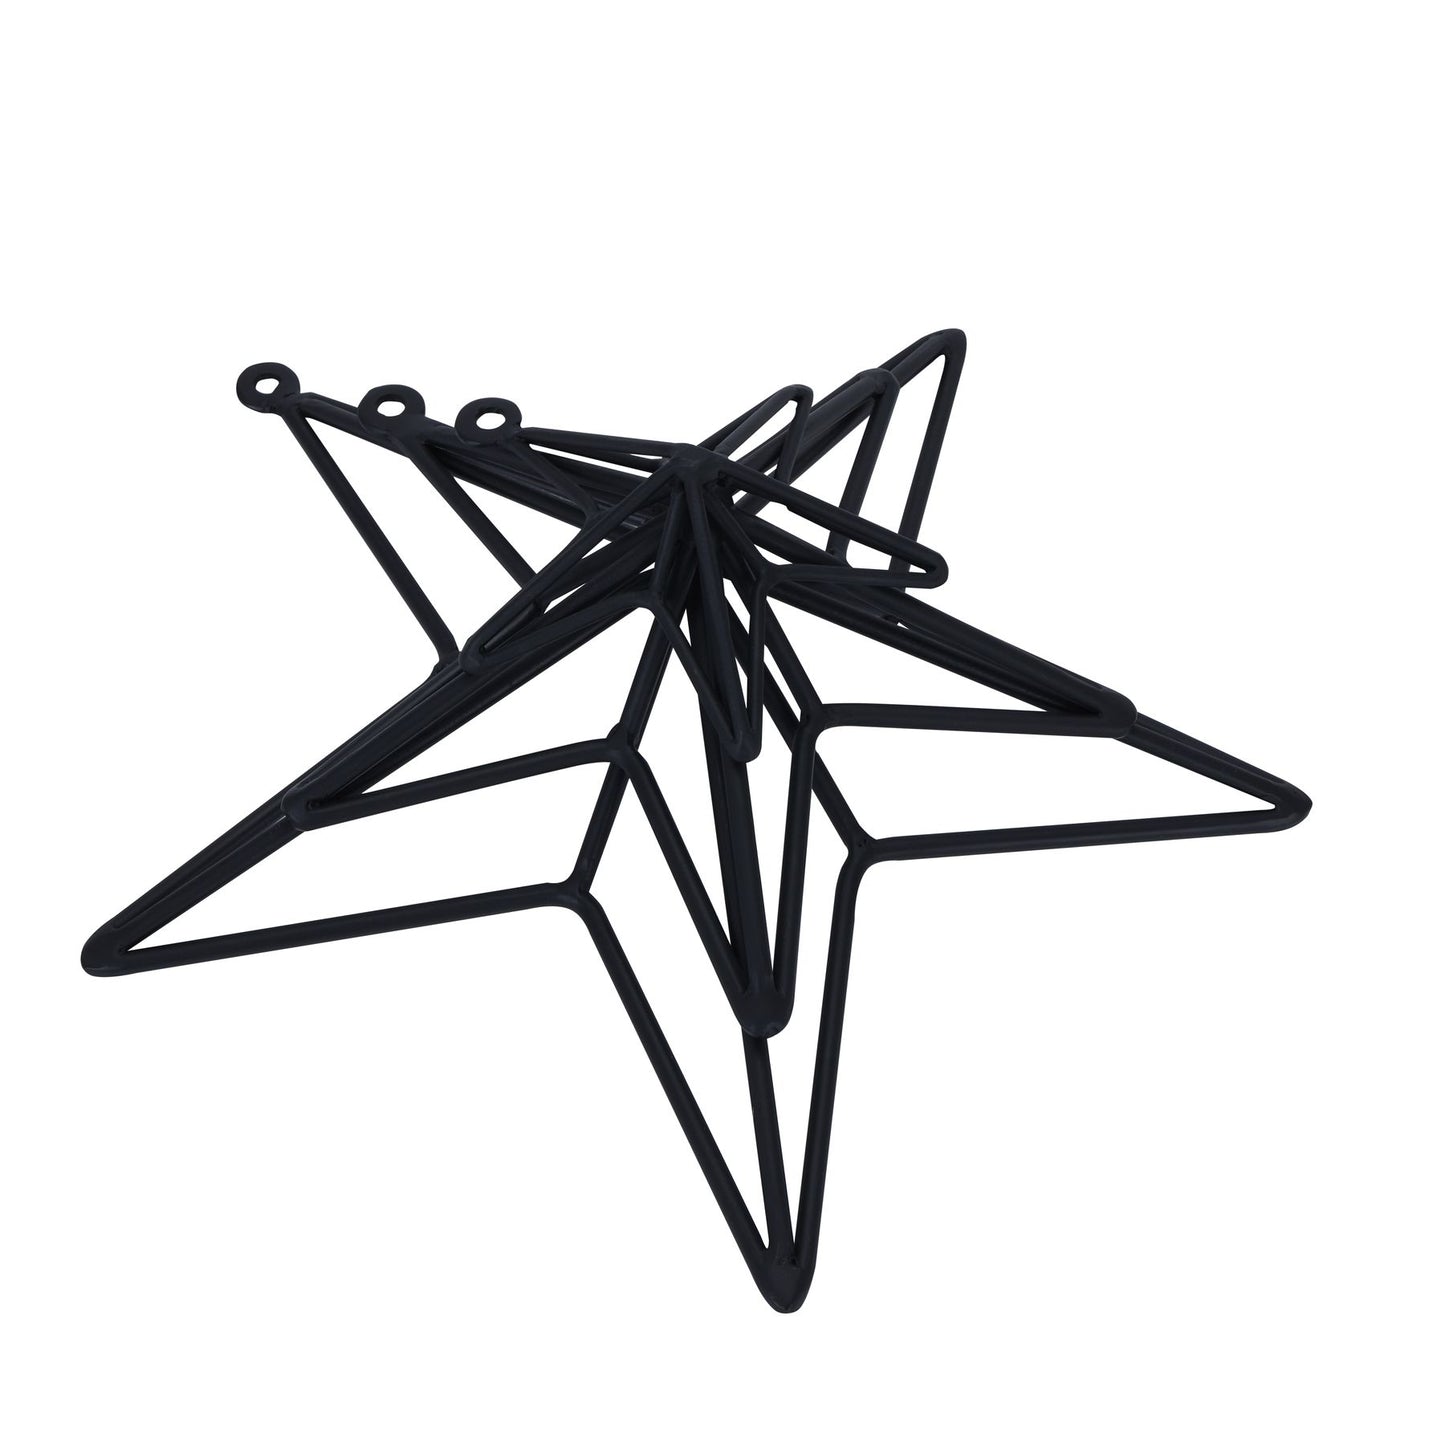 Matt Black Convexed Medium Star Frame